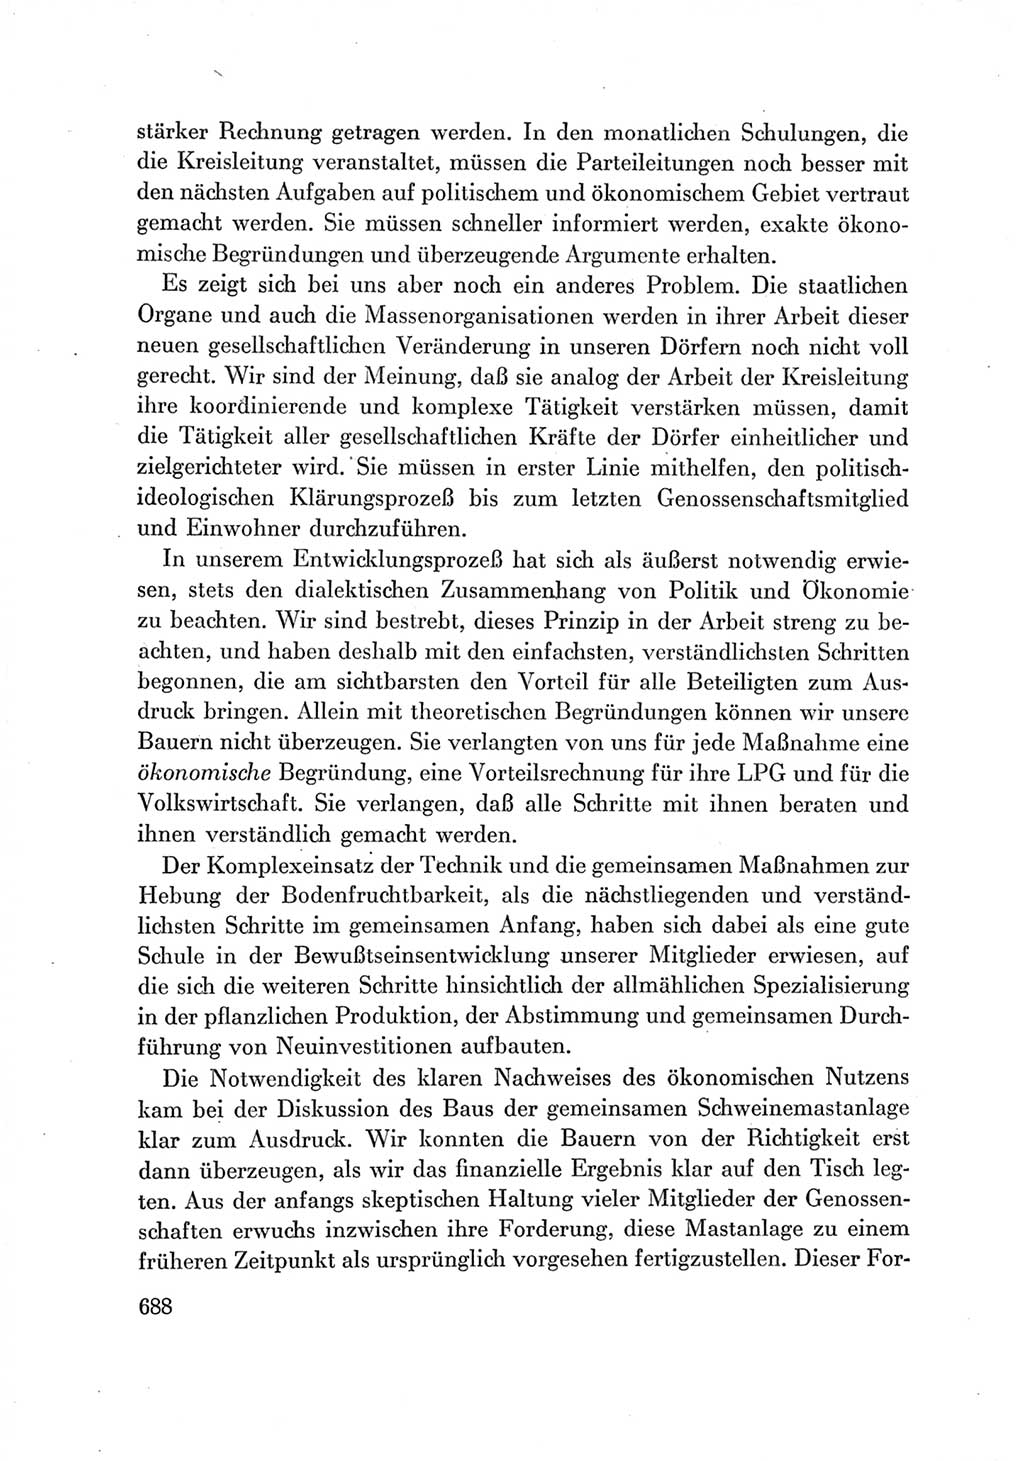 Protokoll der Verhandlungen des Ⅶ. Parteitages der Sozialistischen Einheitspartei Deutschlands (SED) [Deutsche Demokratische Republik (DDR)] 1967, Band Ⅲ, Seite 688 (Prot. Verh. Ⅶ. PT SED DDR 1967, Bd. Ⅲ, S. 688)